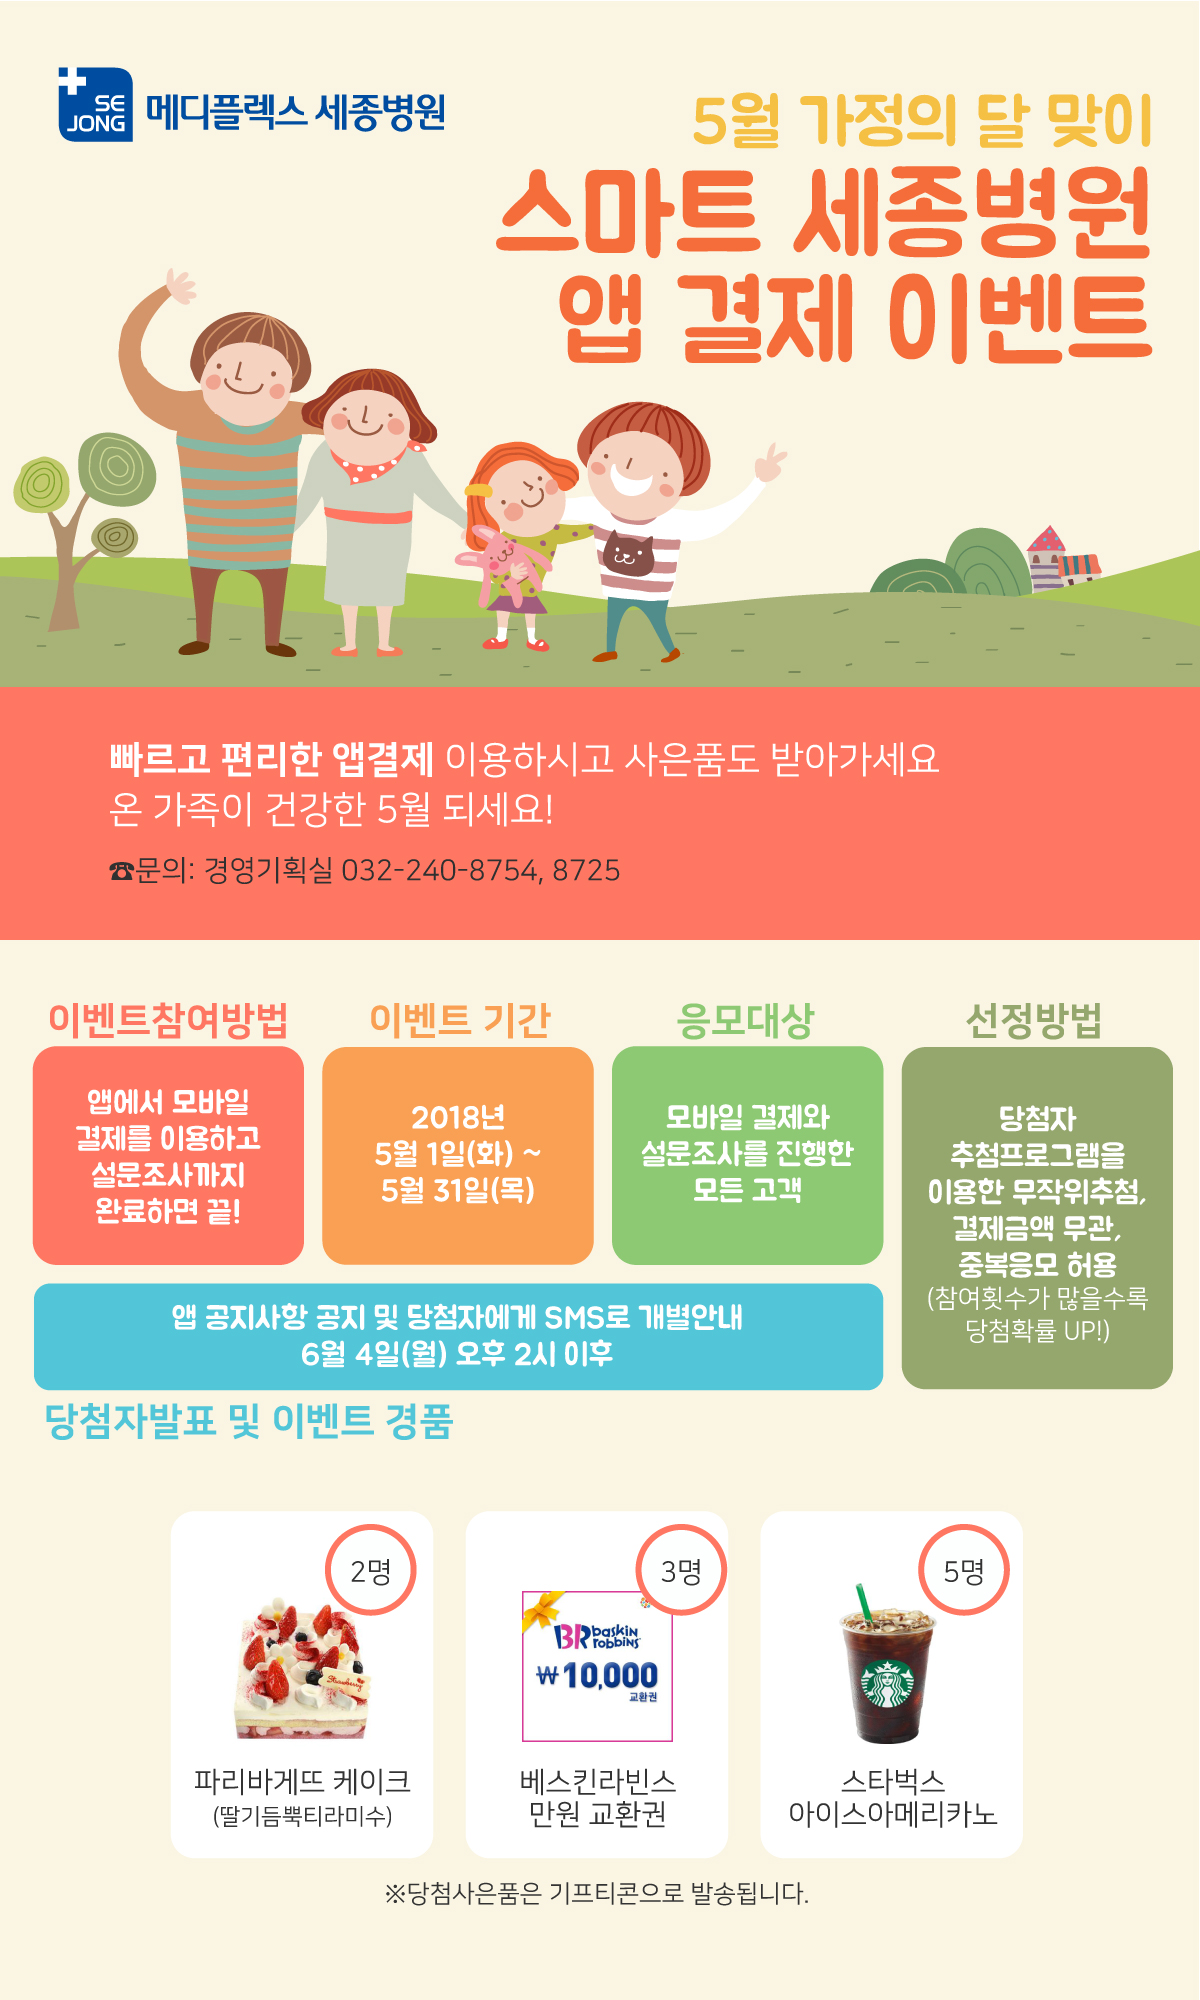 2018_0509_경영기획과_모바일앱이벤트5월_메디.jpg